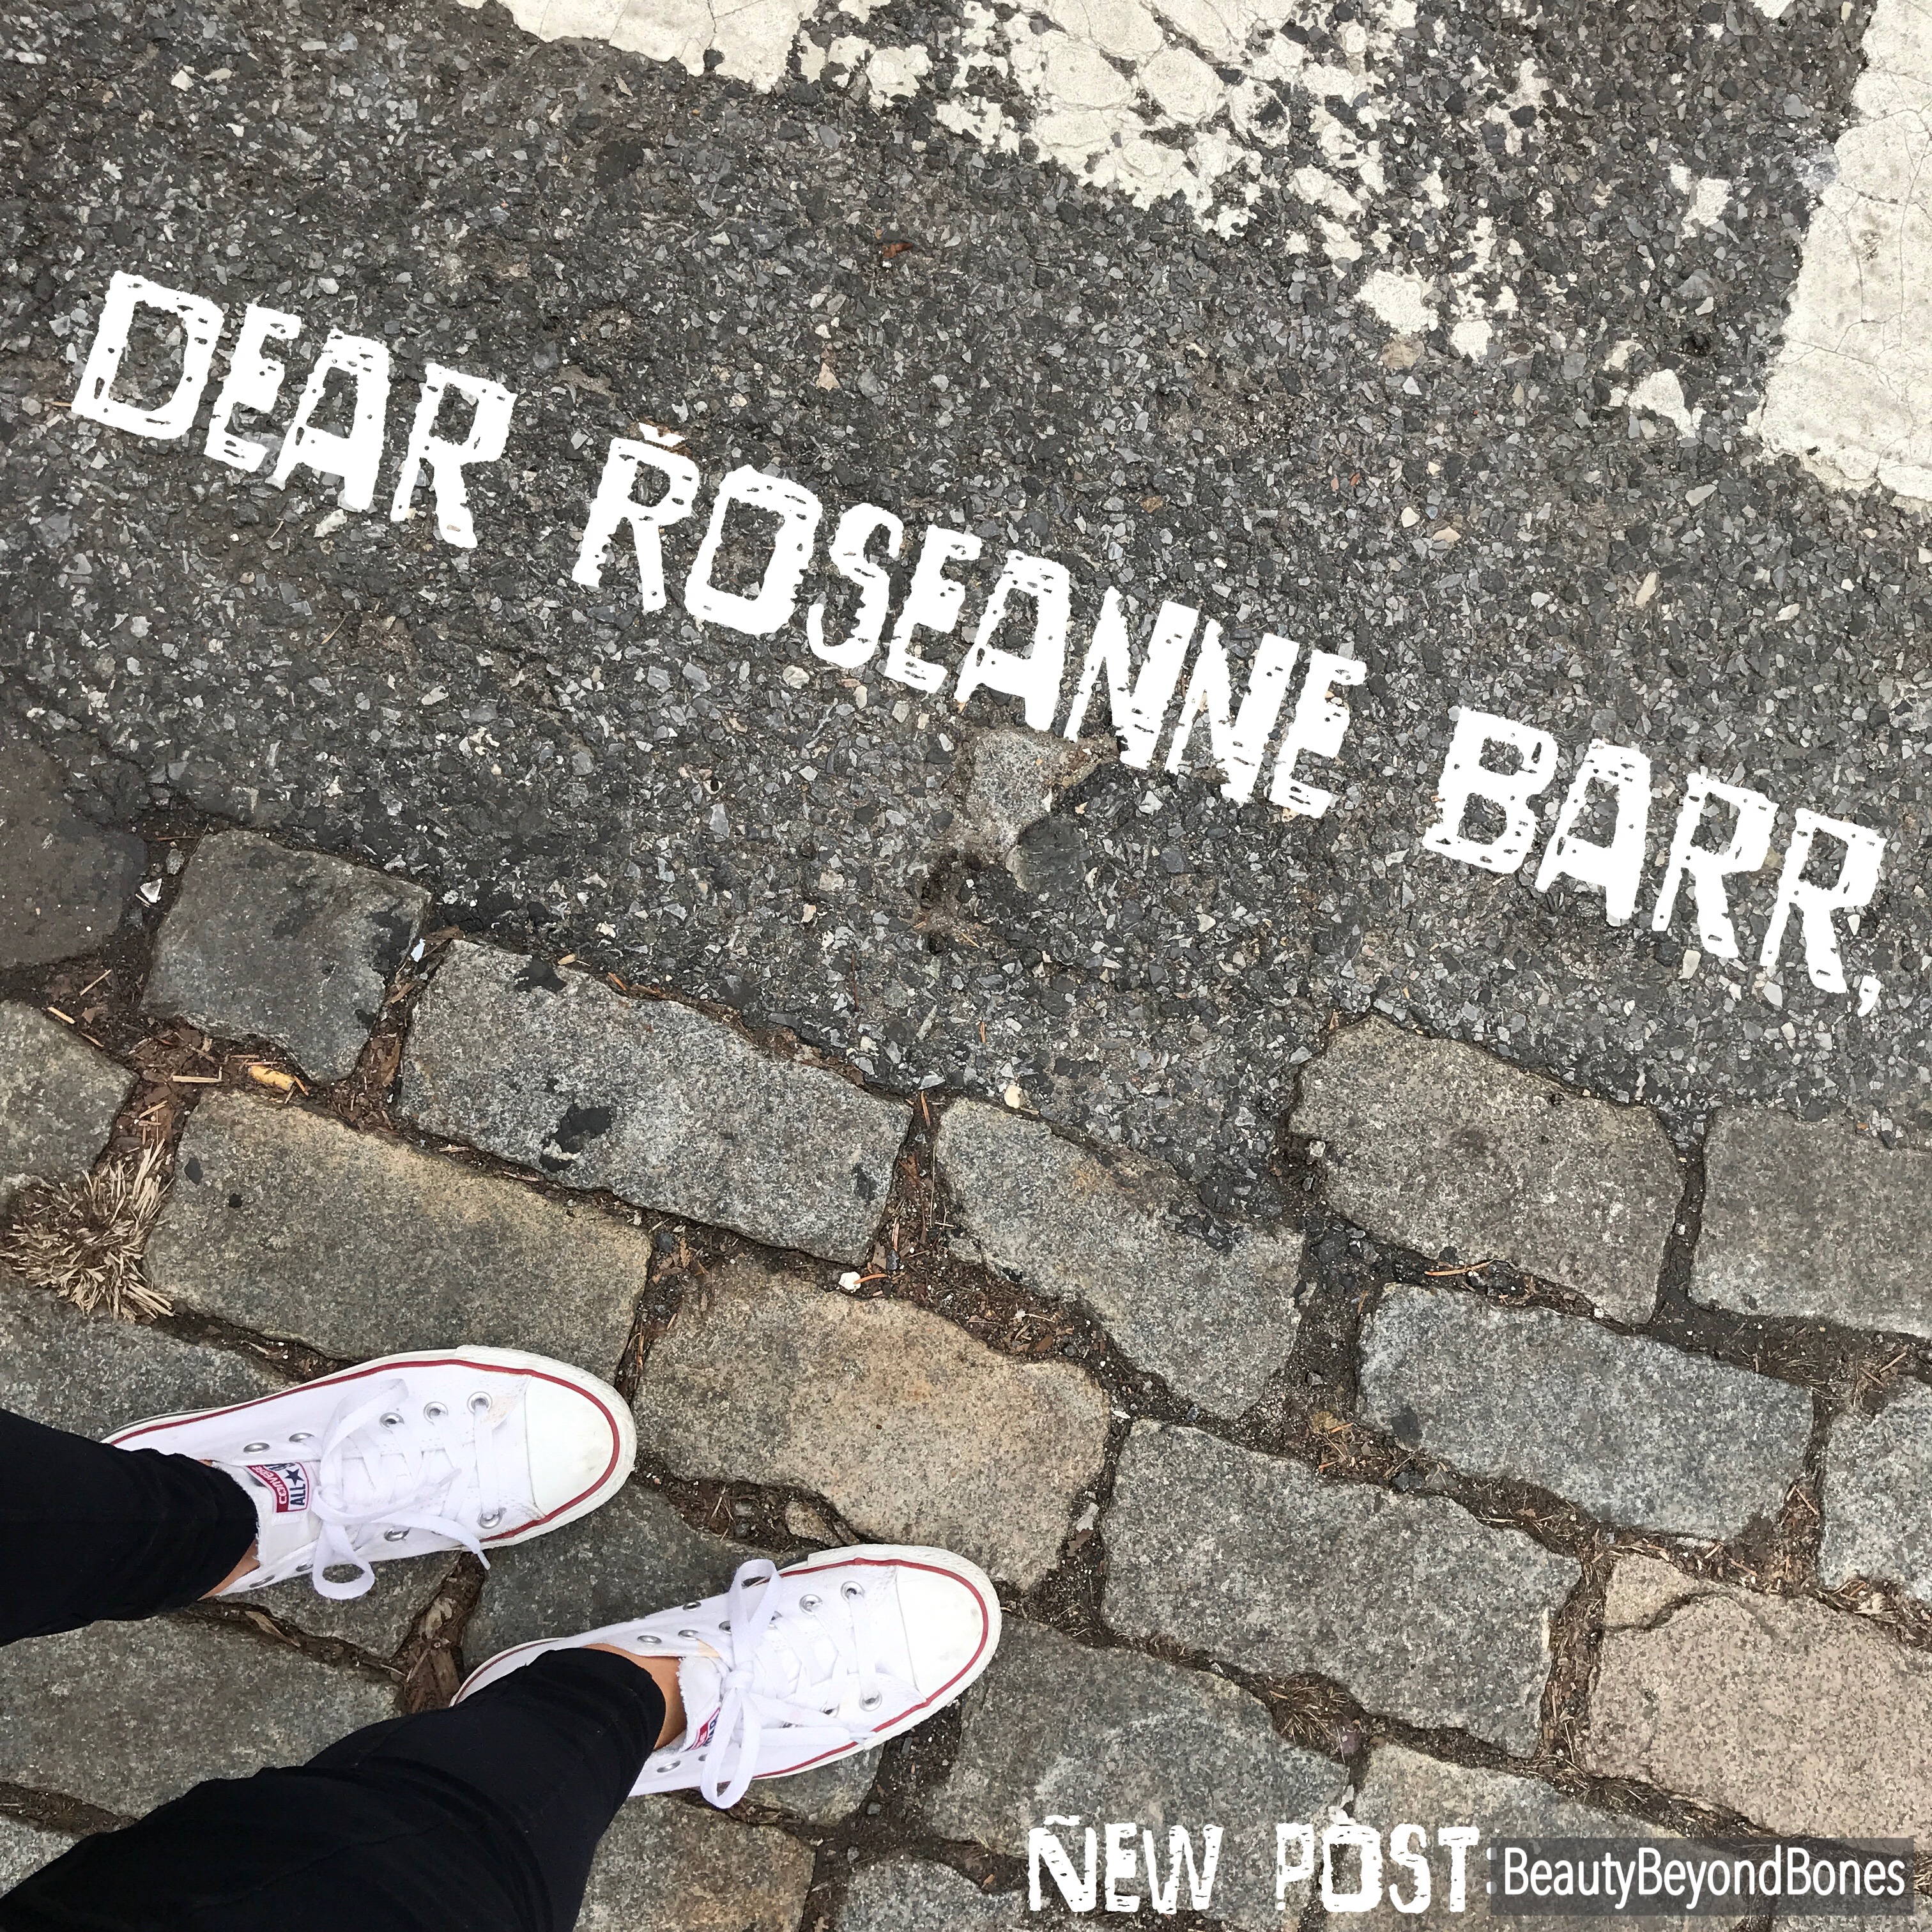 Dear Roseanne Barr,